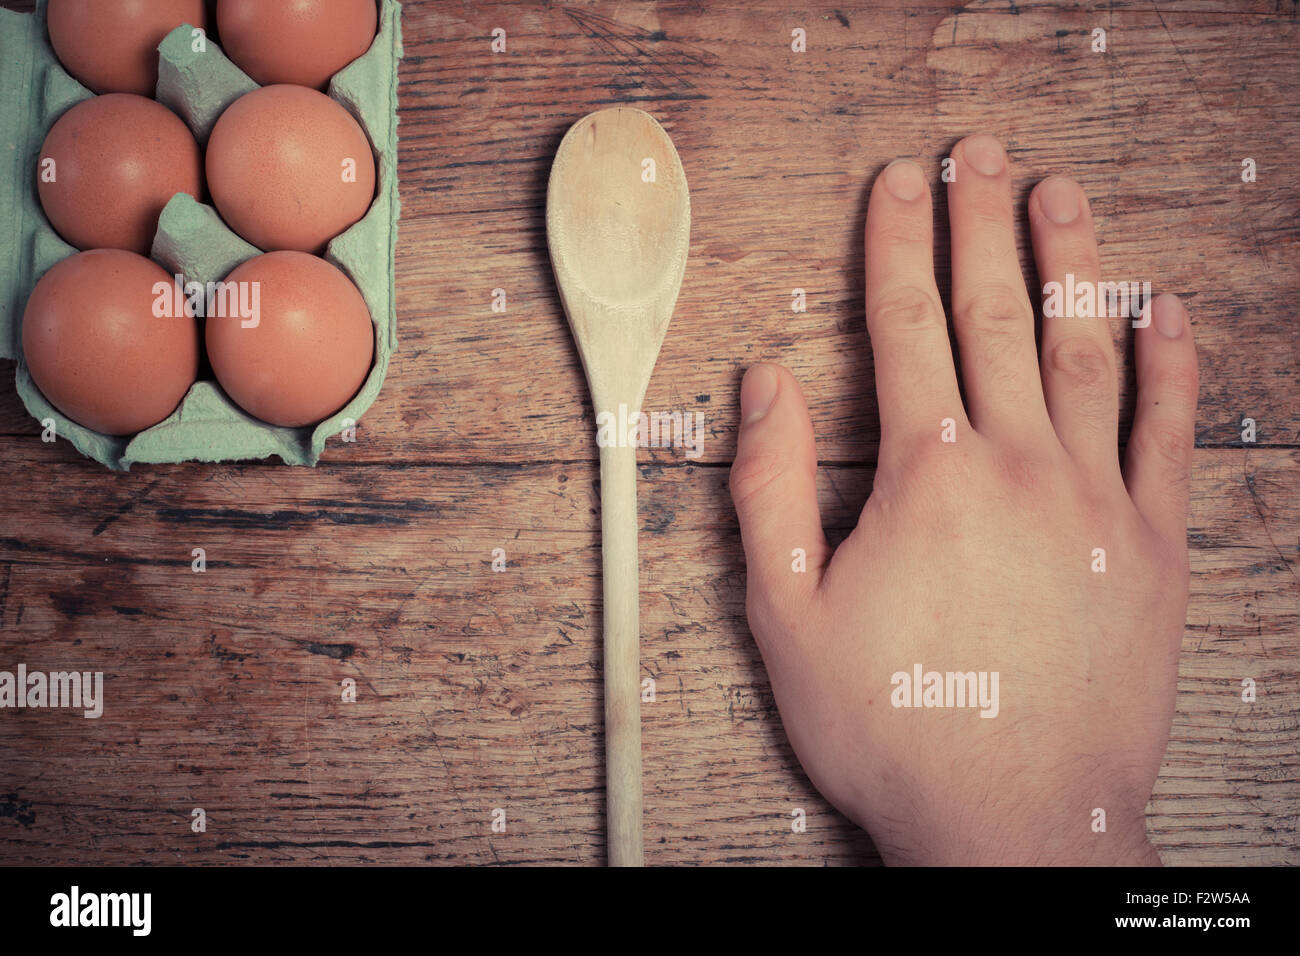 Uomo appoggiato la sua mano accanto alle uova e un cucchiaio di legno su un tavolo Foto Stock